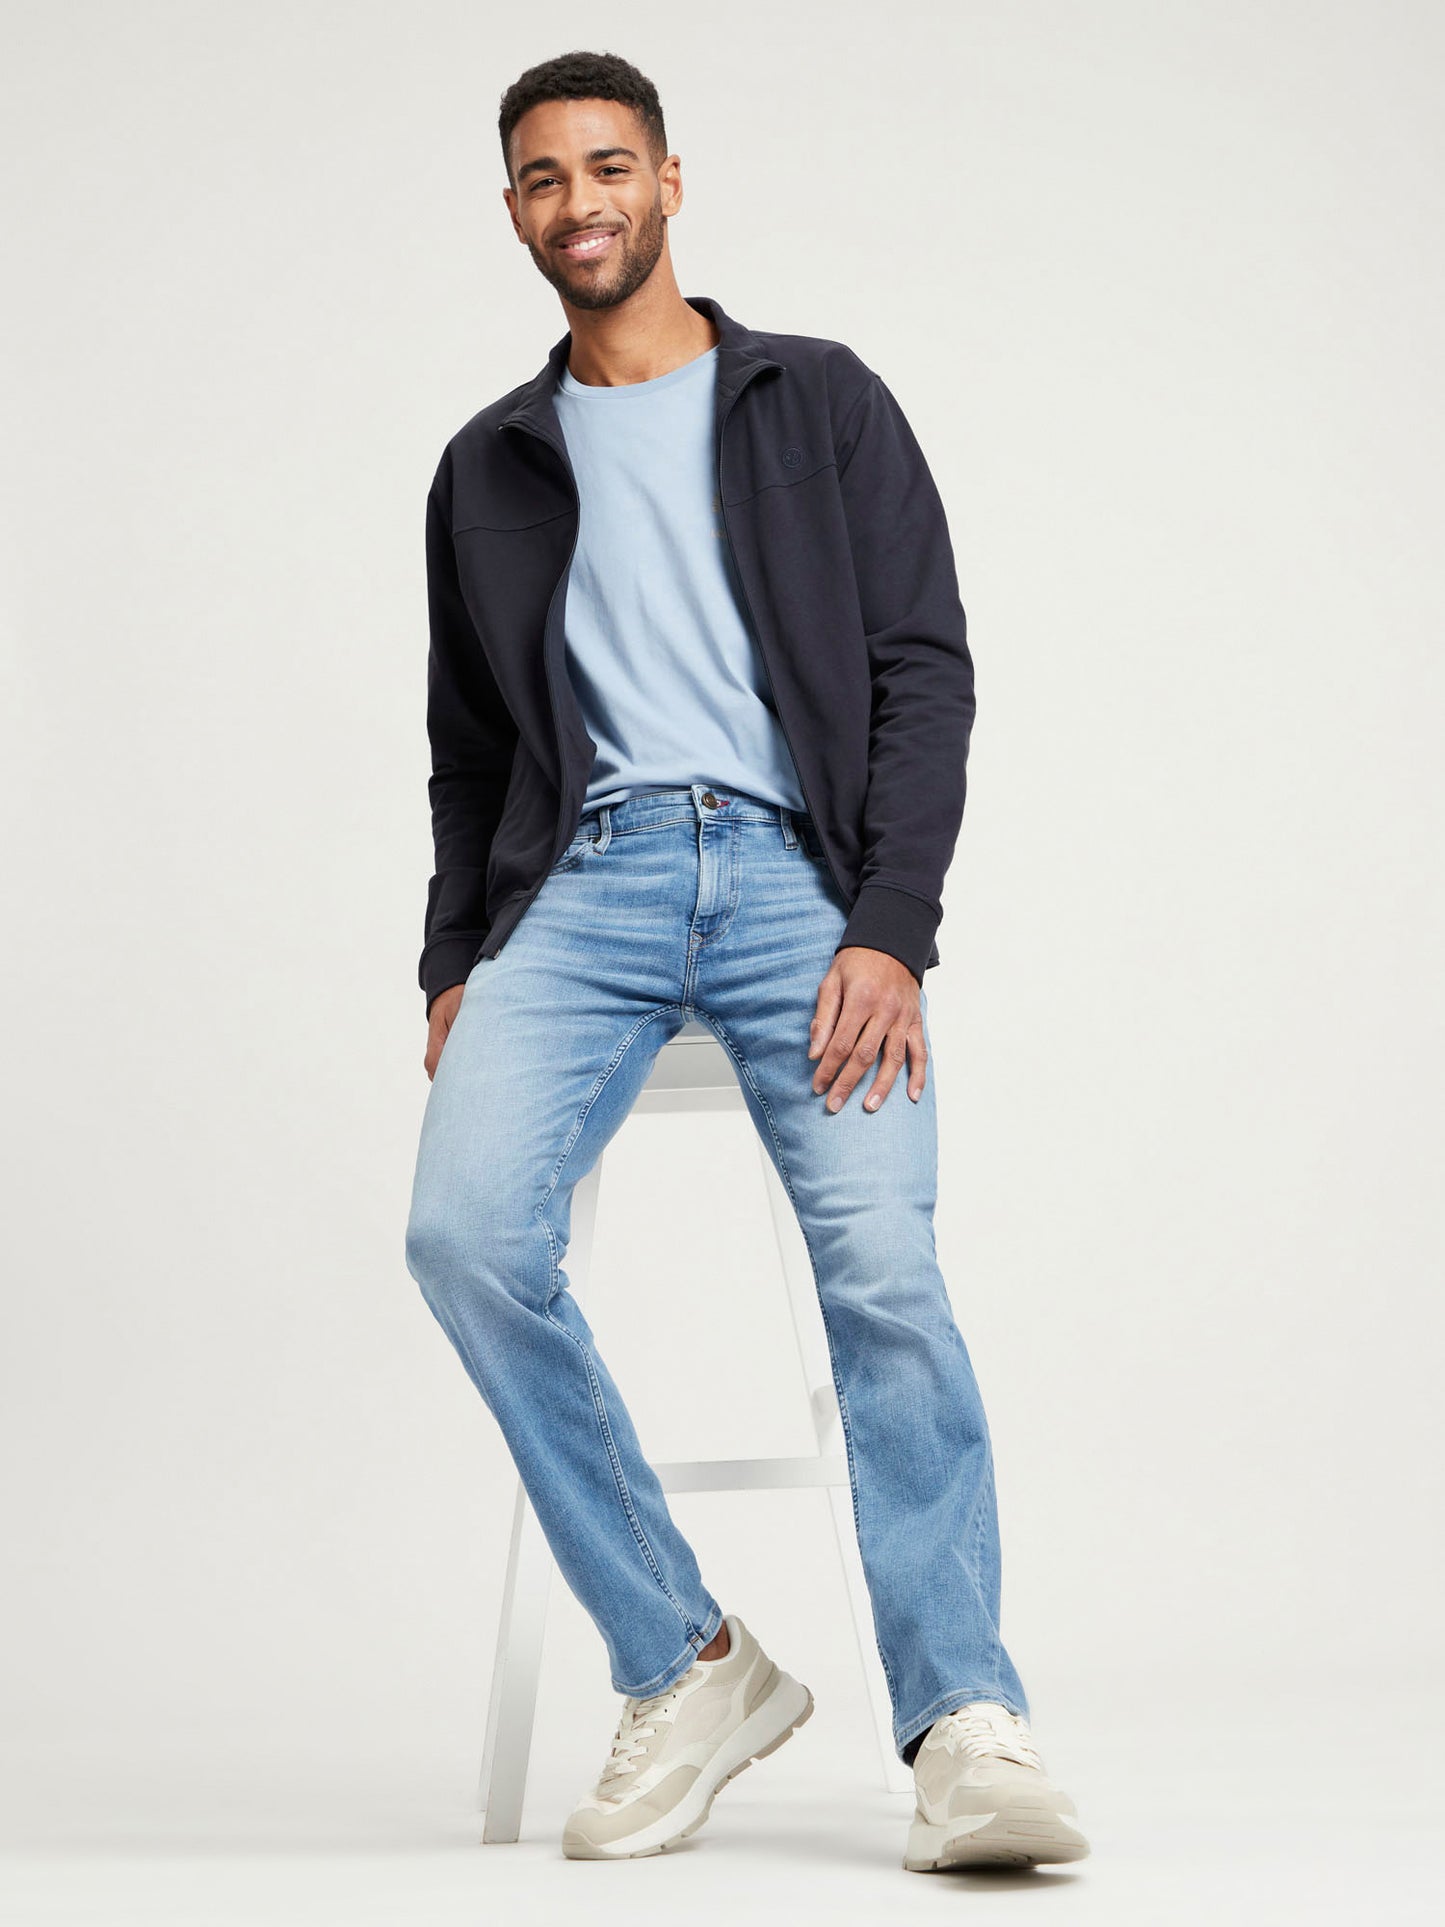 Damien Men's Jeans Slim Fit Regular Waist Straight Leg Light Blue